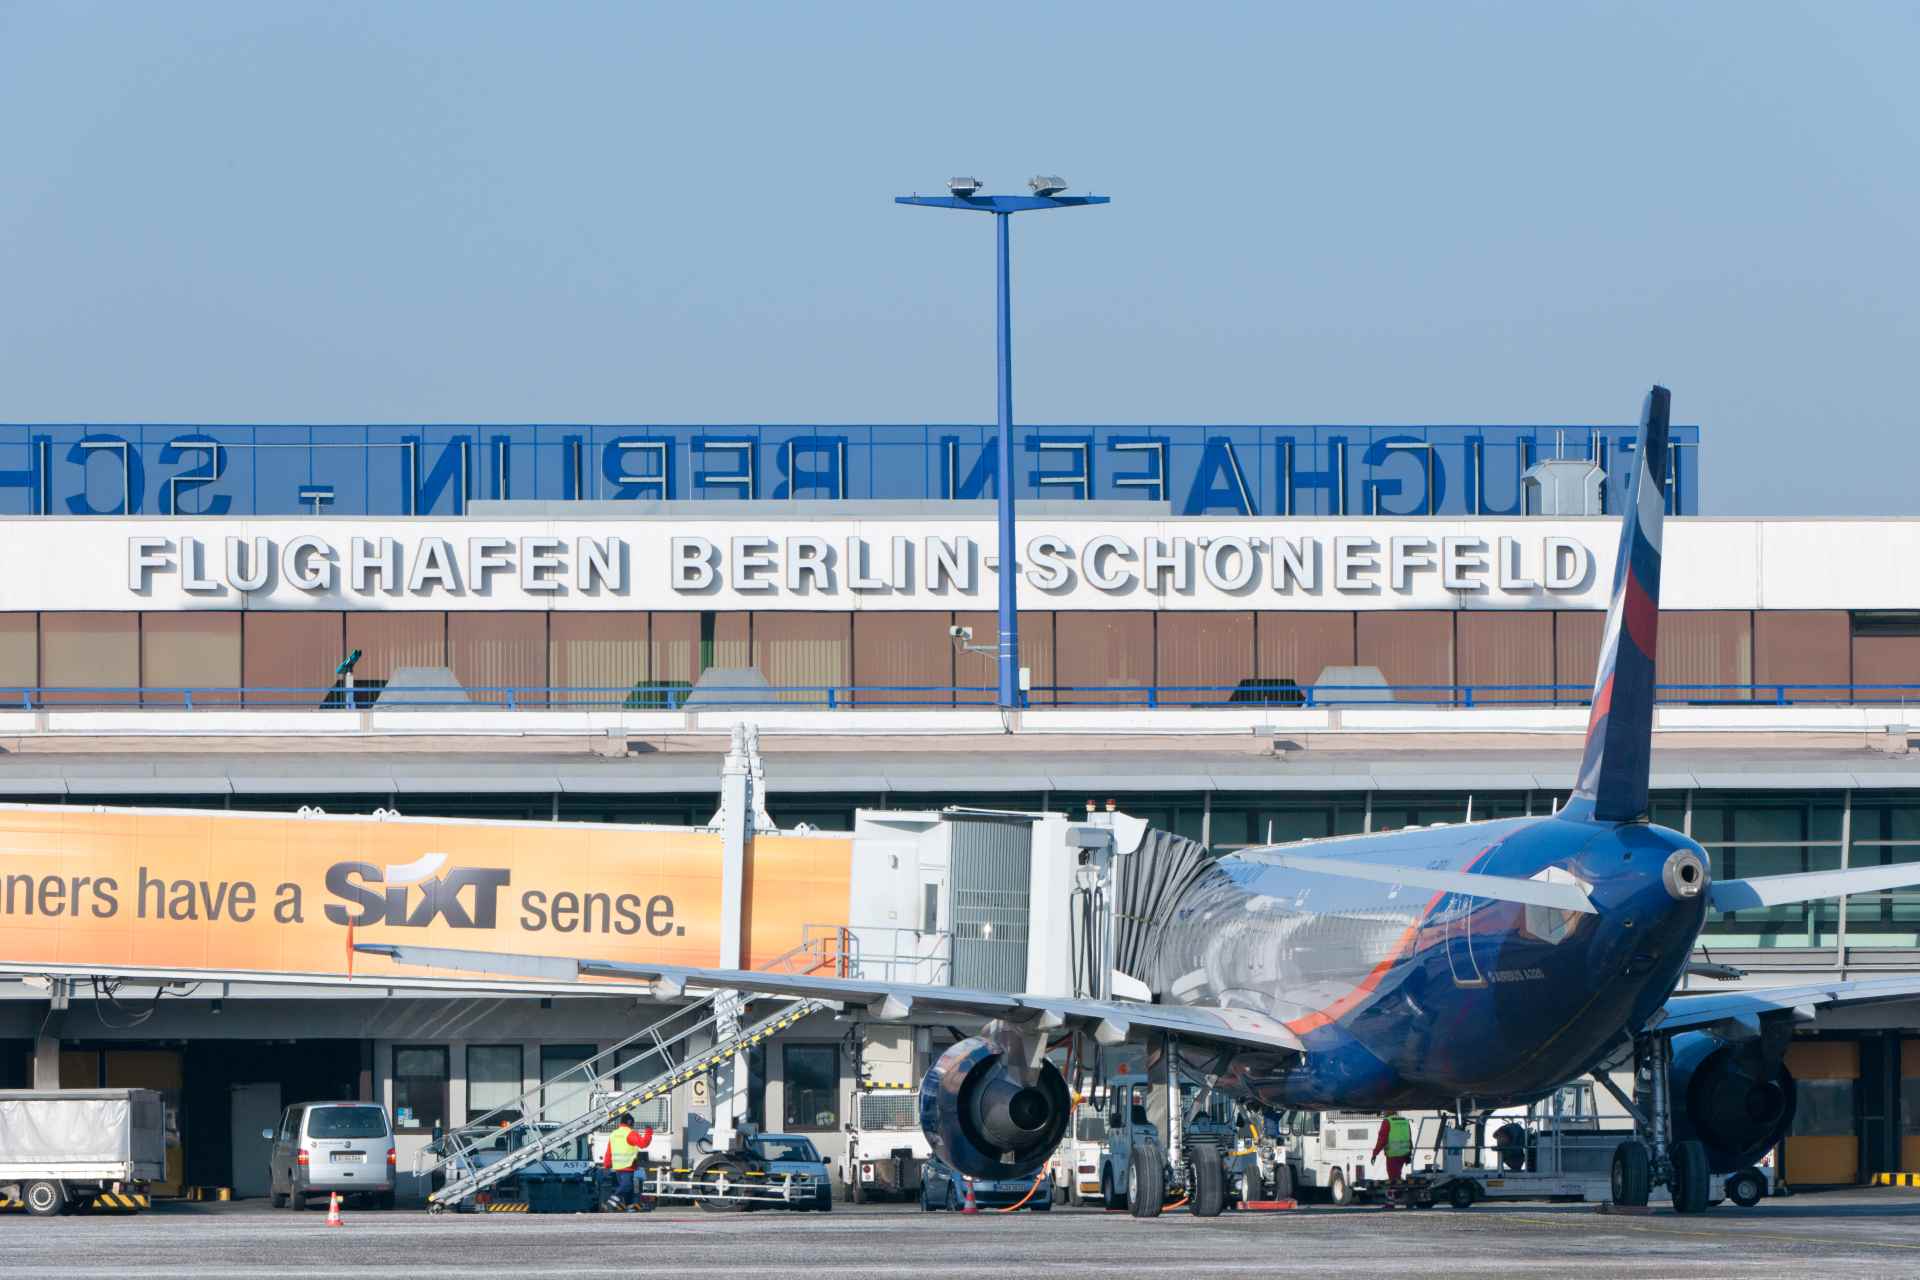 Flughafen Berlin-Schönefeld Flugzeug beim Boarding